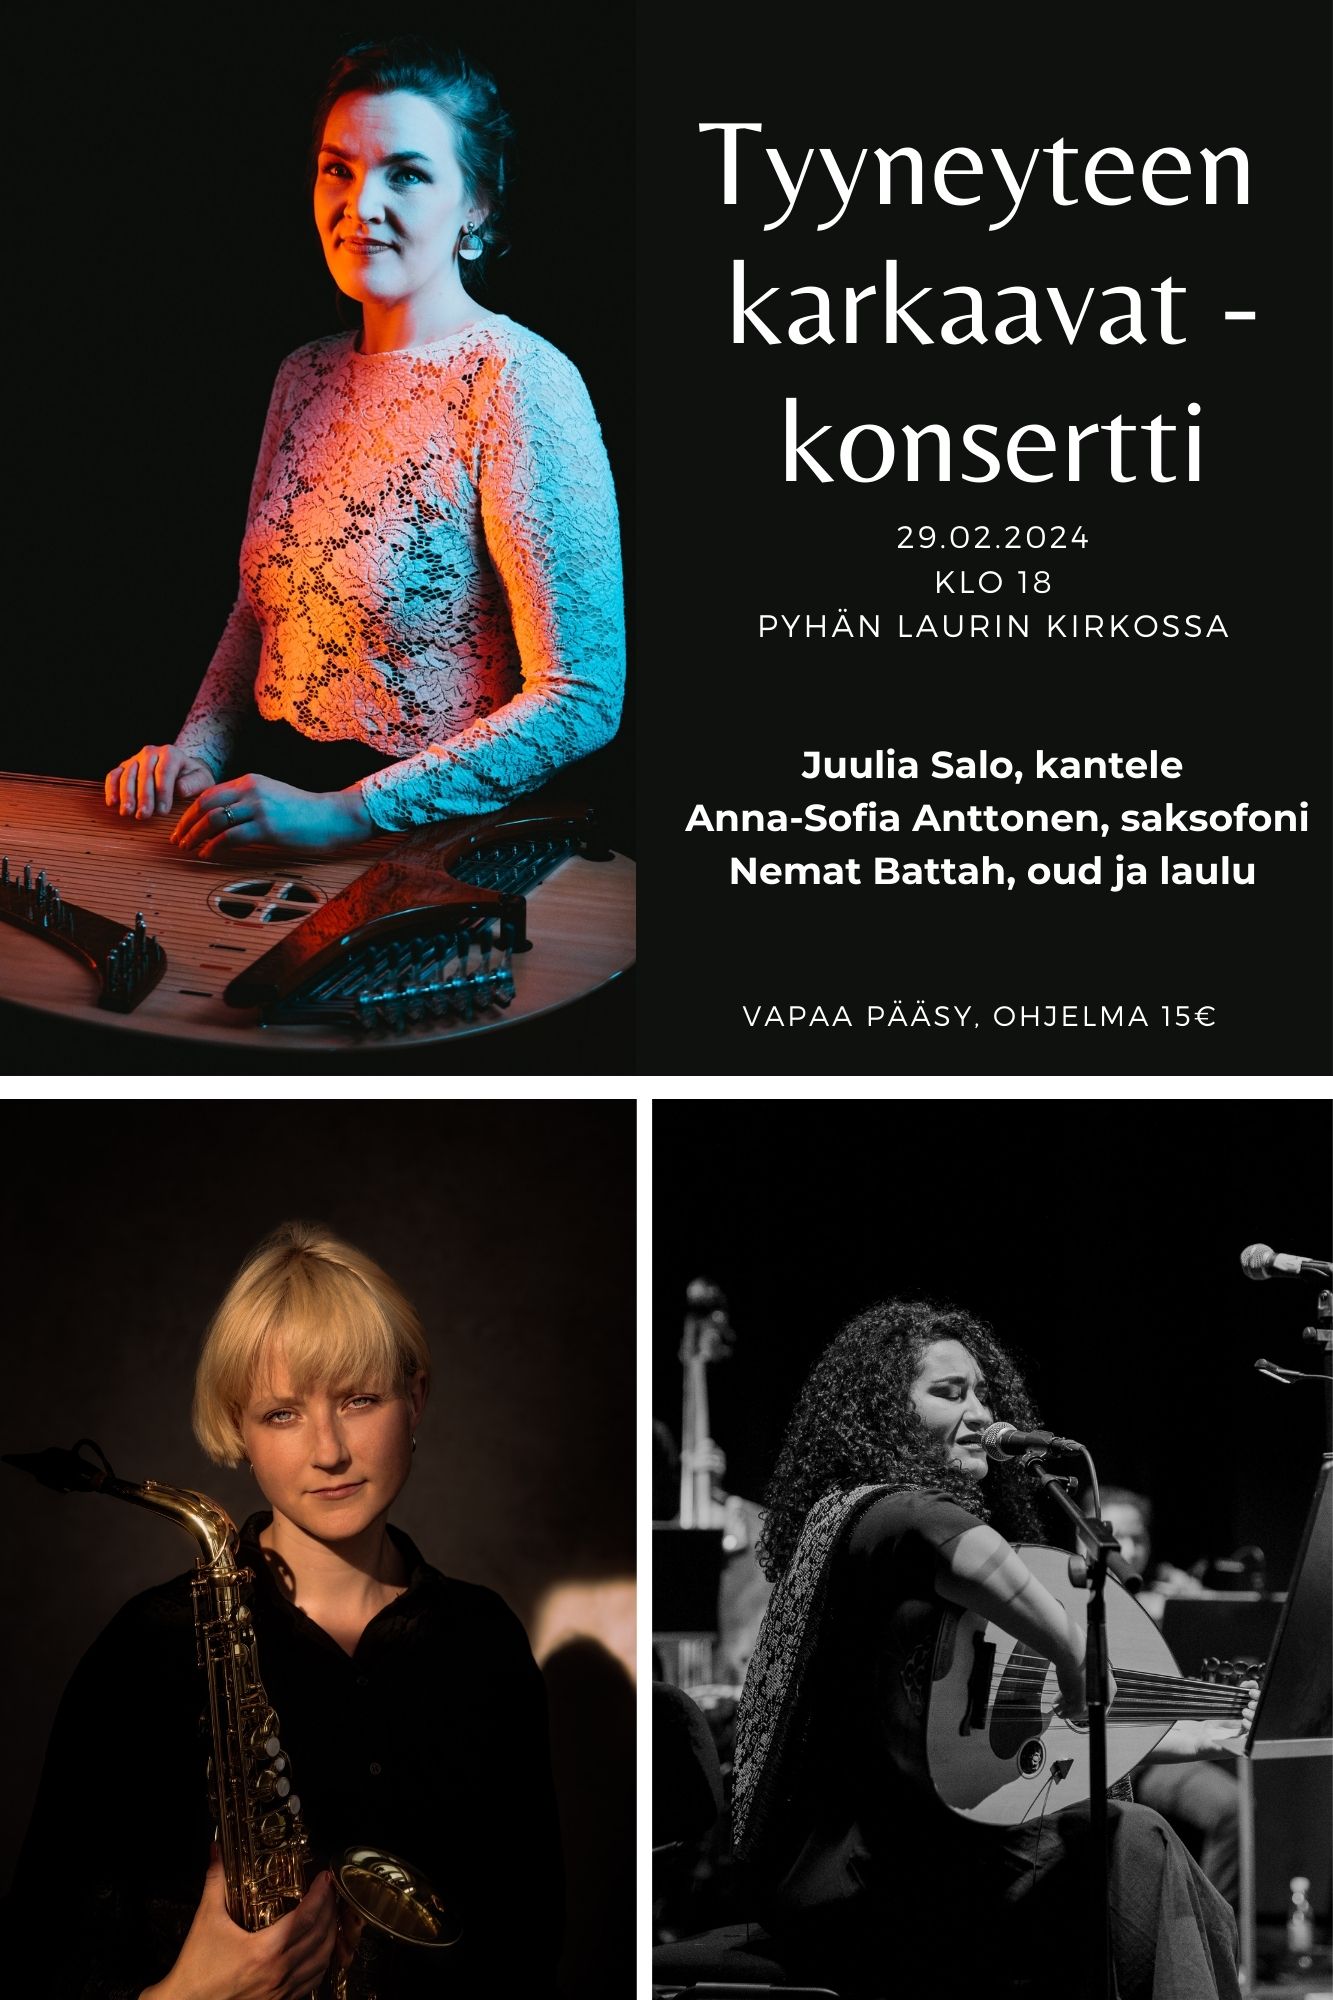 Karkauspäivän konsertti: Tyyneyteen karkaavat – Juulia Salo, kantele, Anna-Sofia Anttonen, saksofoni ja Nemat Battah, oud ja laulu.